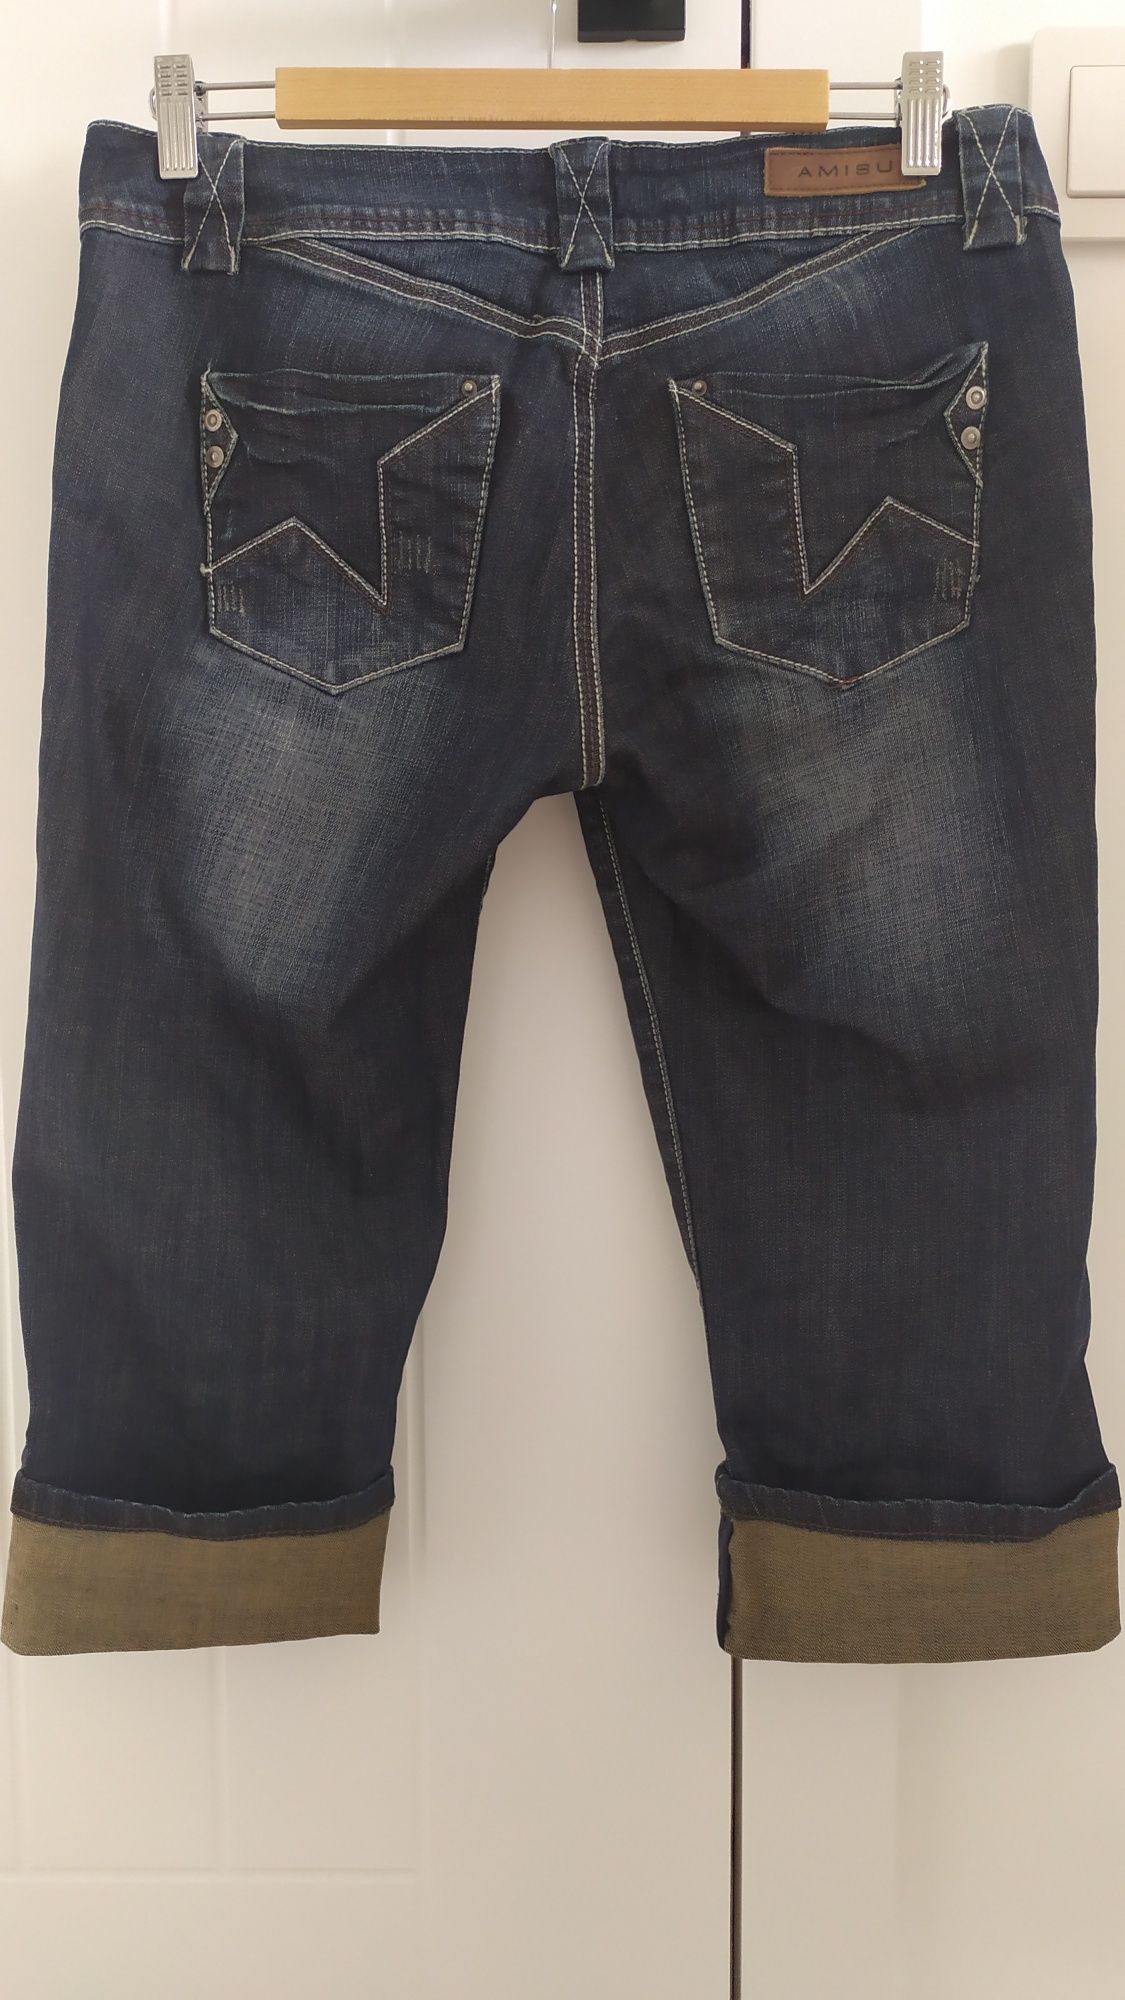 Spodnie jeansy rozm. 31 Amisu